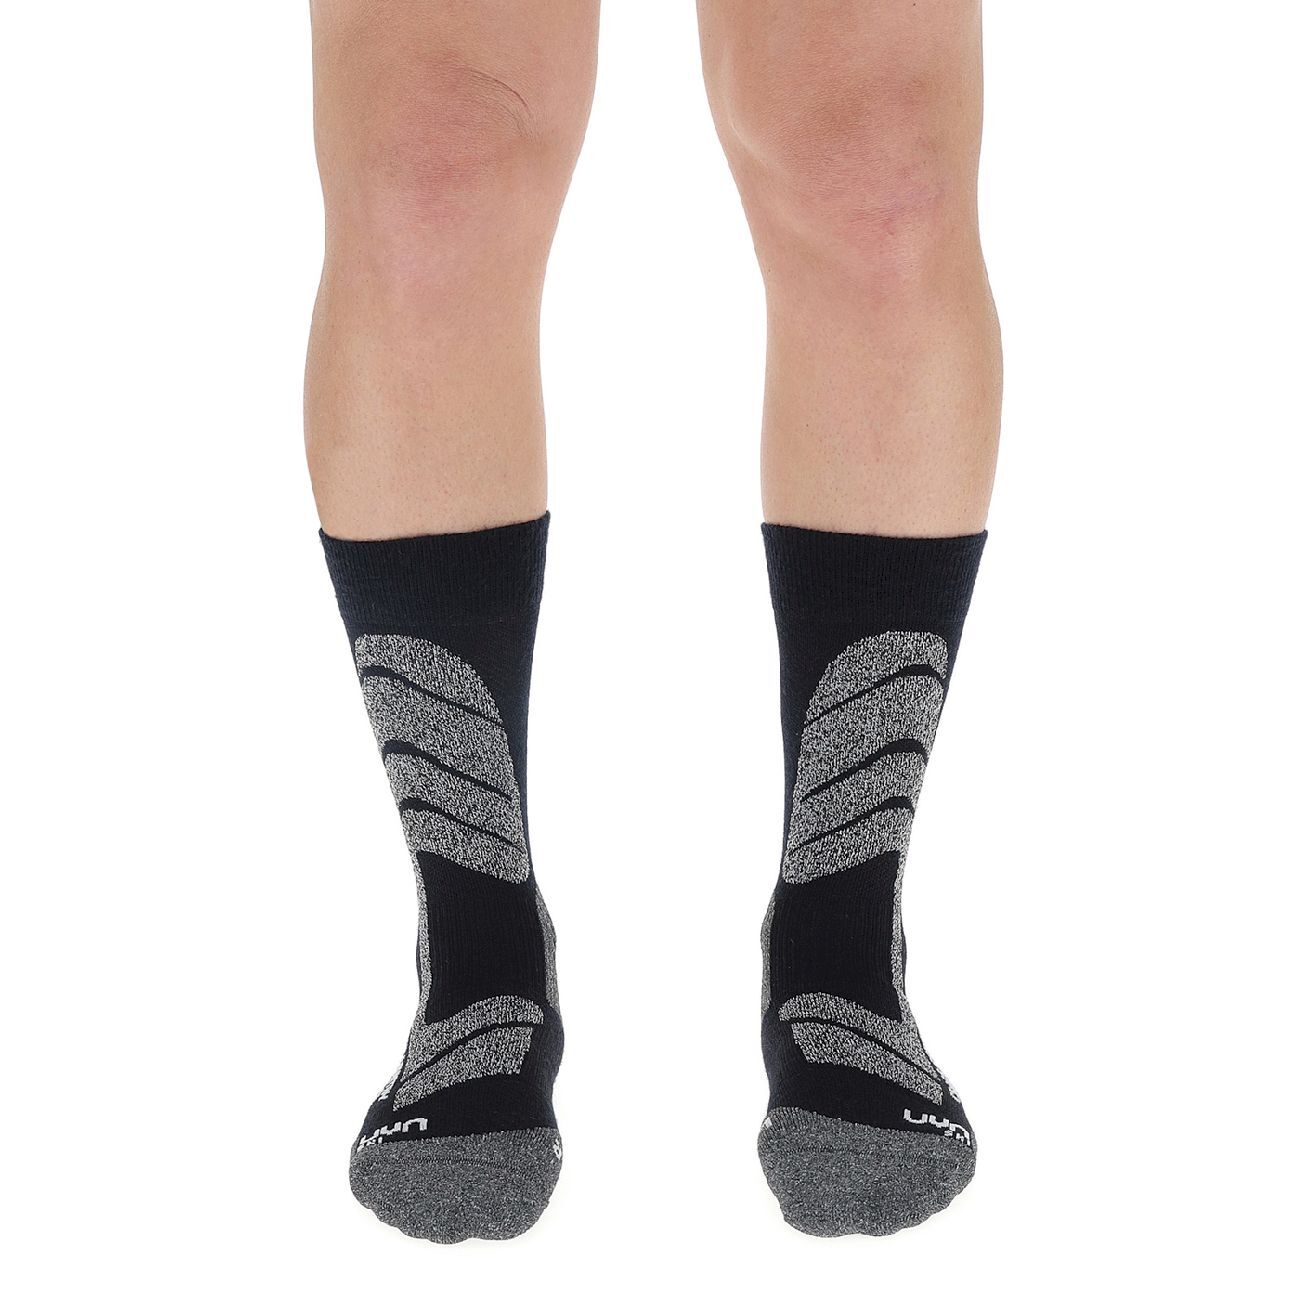 Uyn Ski Cross Country Socks - Skisocken - Herren